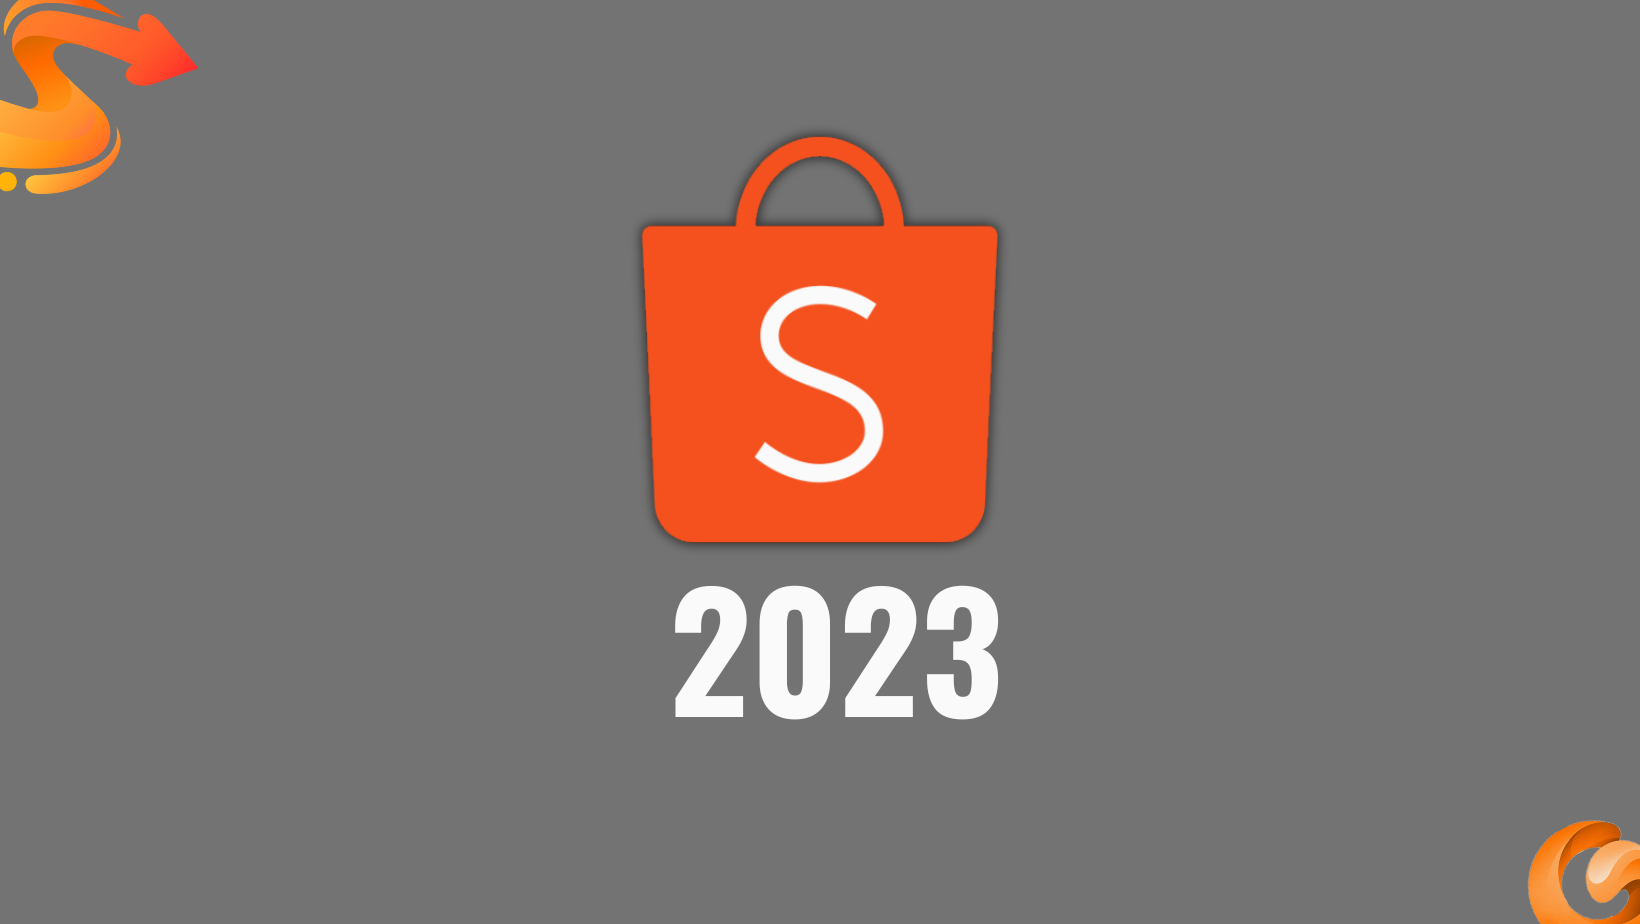 Quy trình và chiến lược bán hàng trên Shopee mới 2023